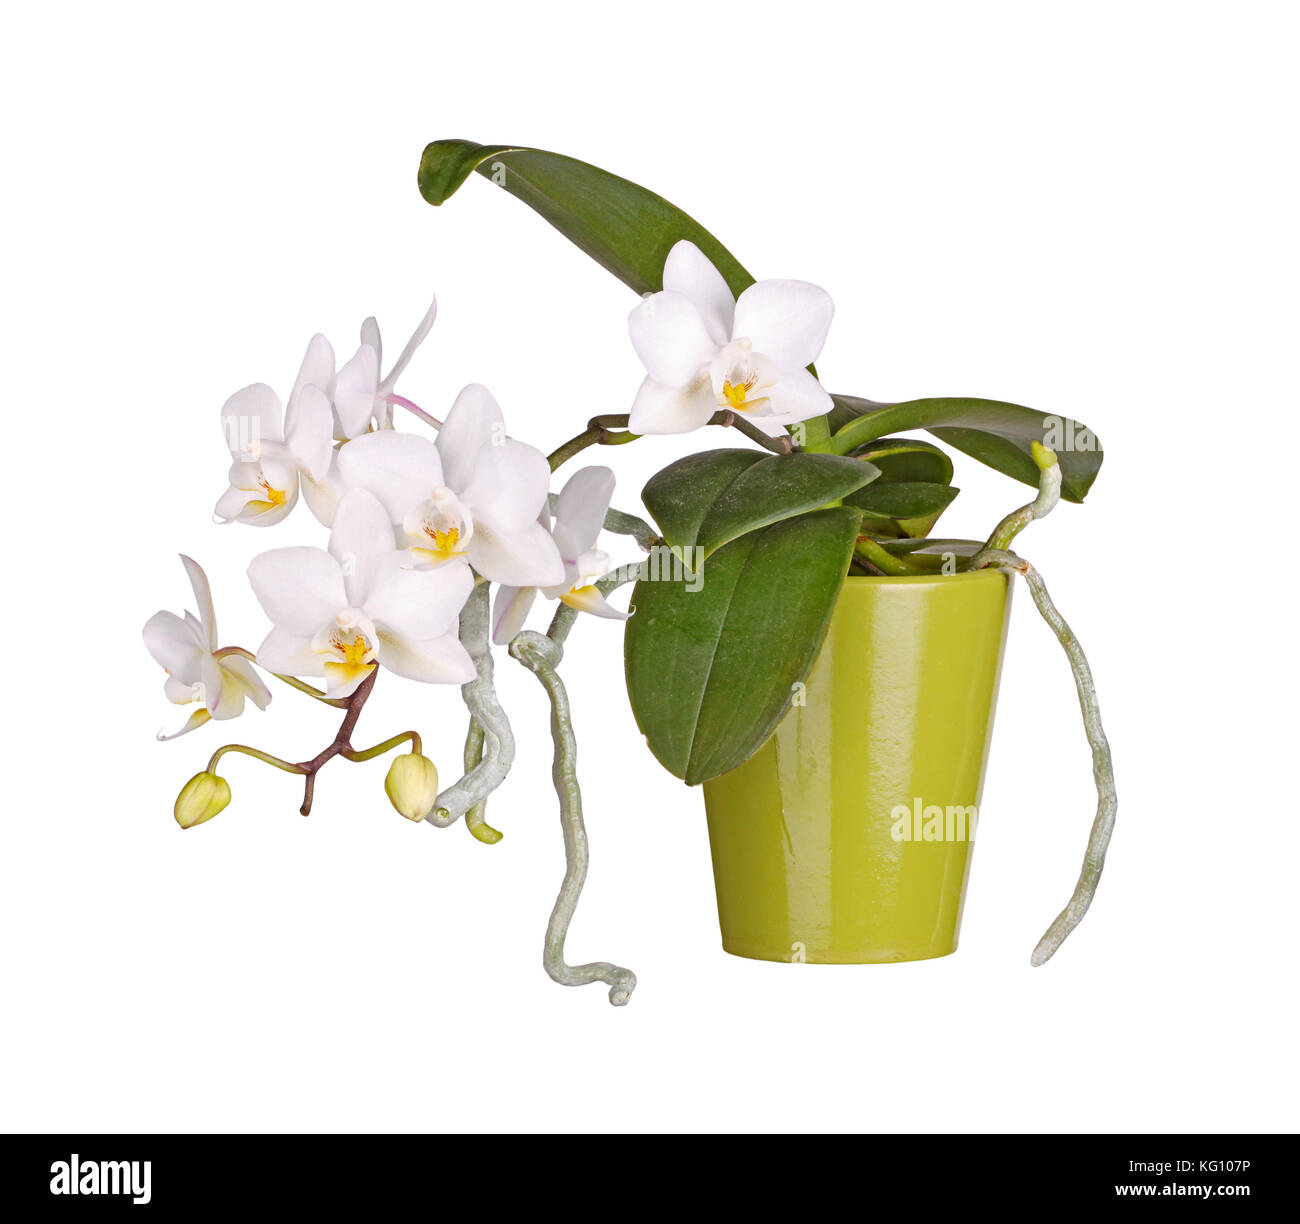 Des jets de fleurs jaunes et blanches sur une orchidée phalaenopsis et des racines aériennes qui se développe dans un pot d'argile verte isolée sur fond blanc Banque D'Images